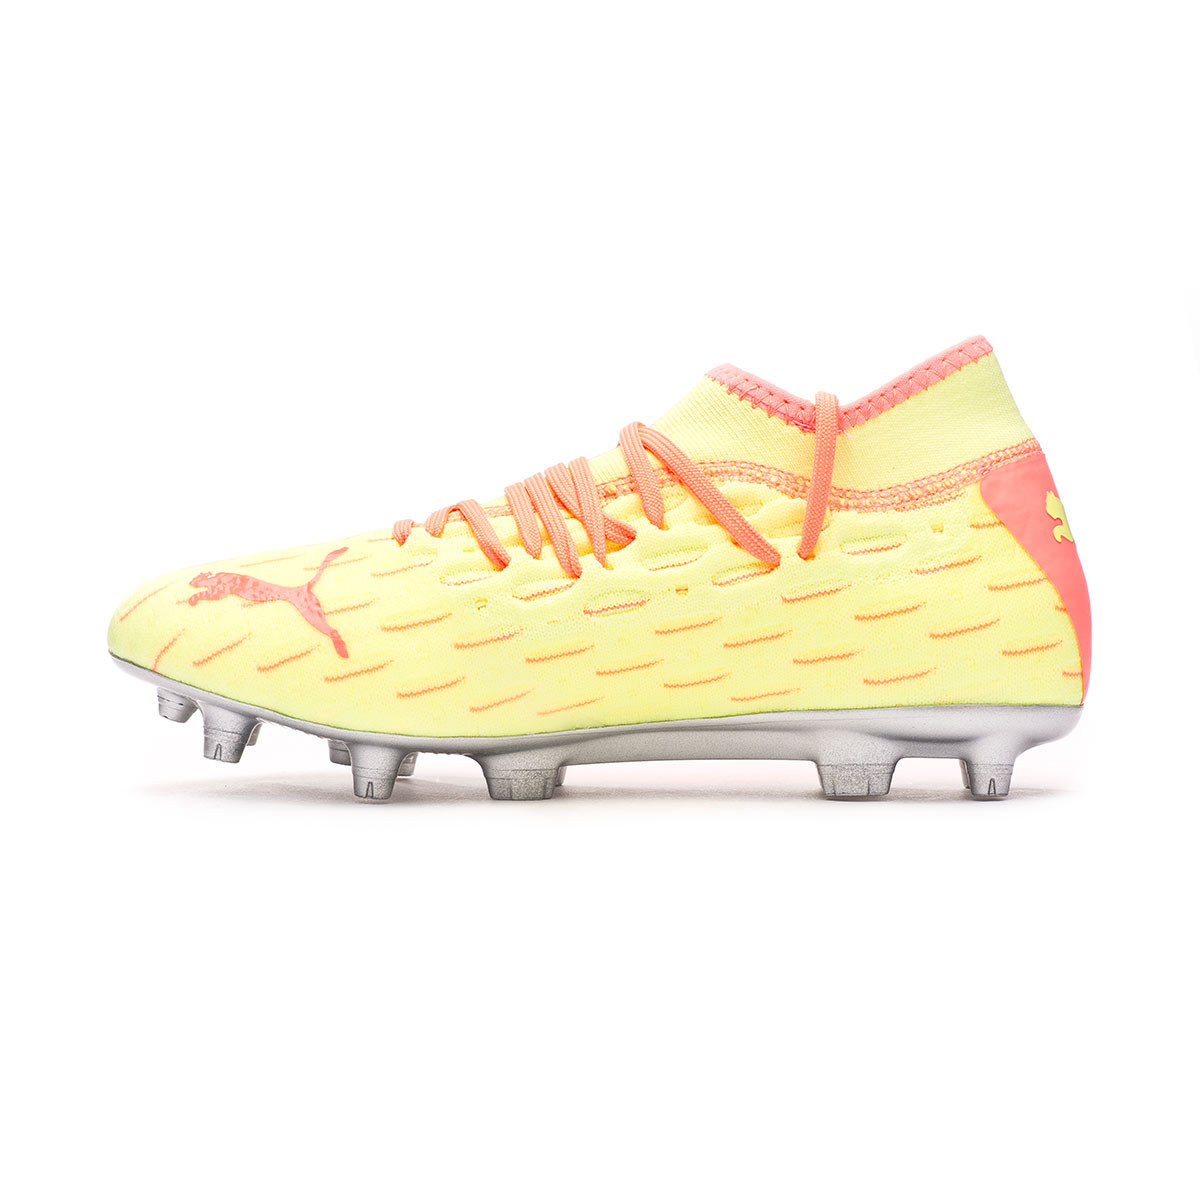 peach football boots